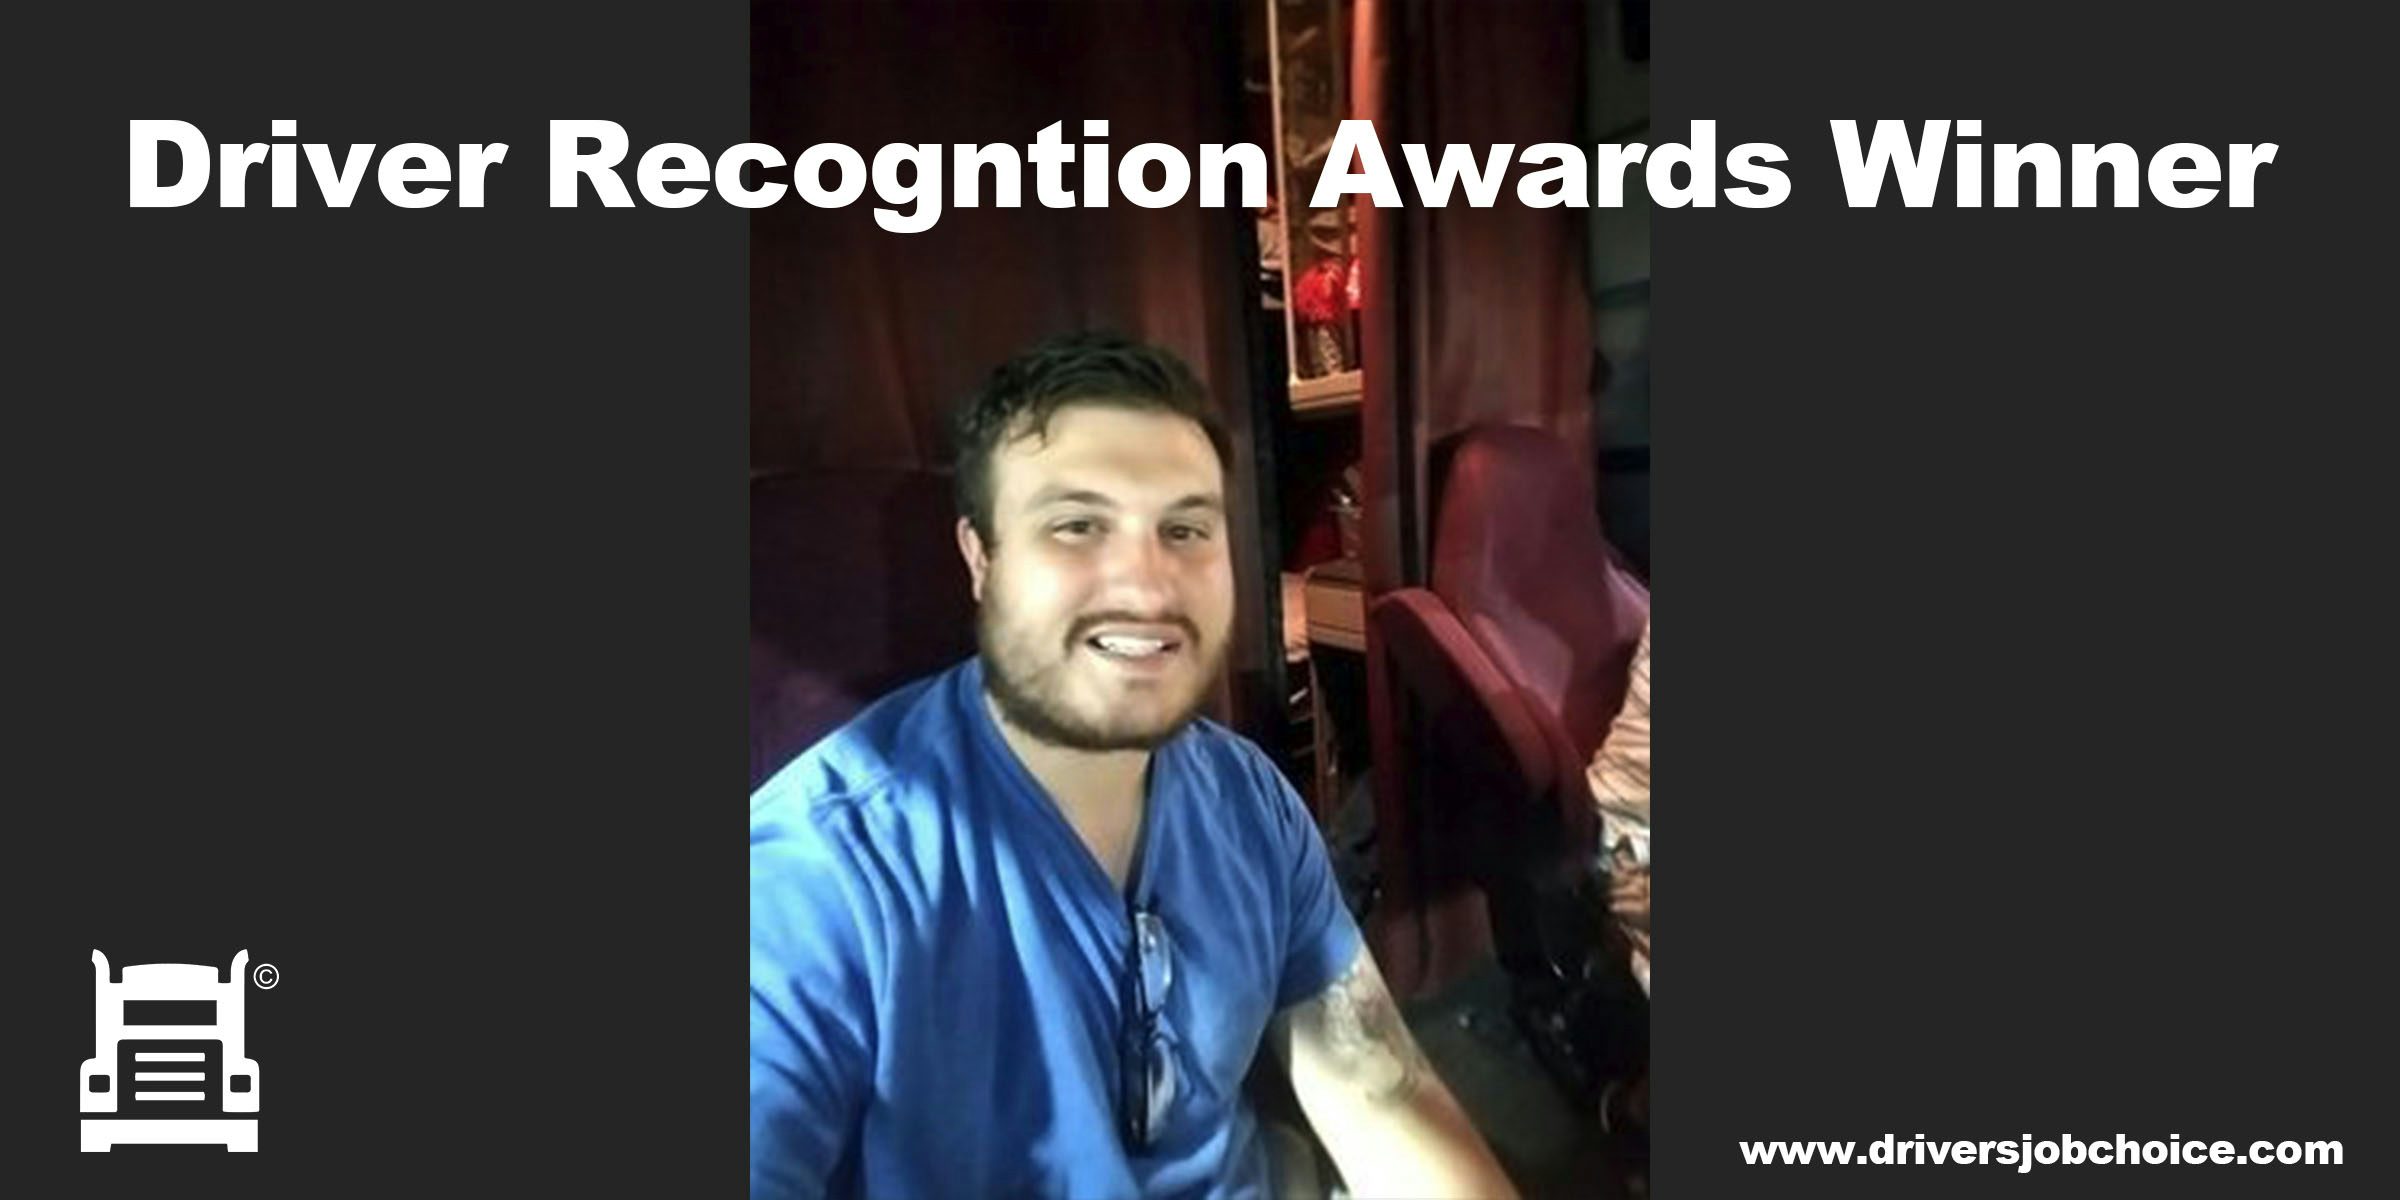 Driver Recognition Awards Winner - Andrew Deitzler image